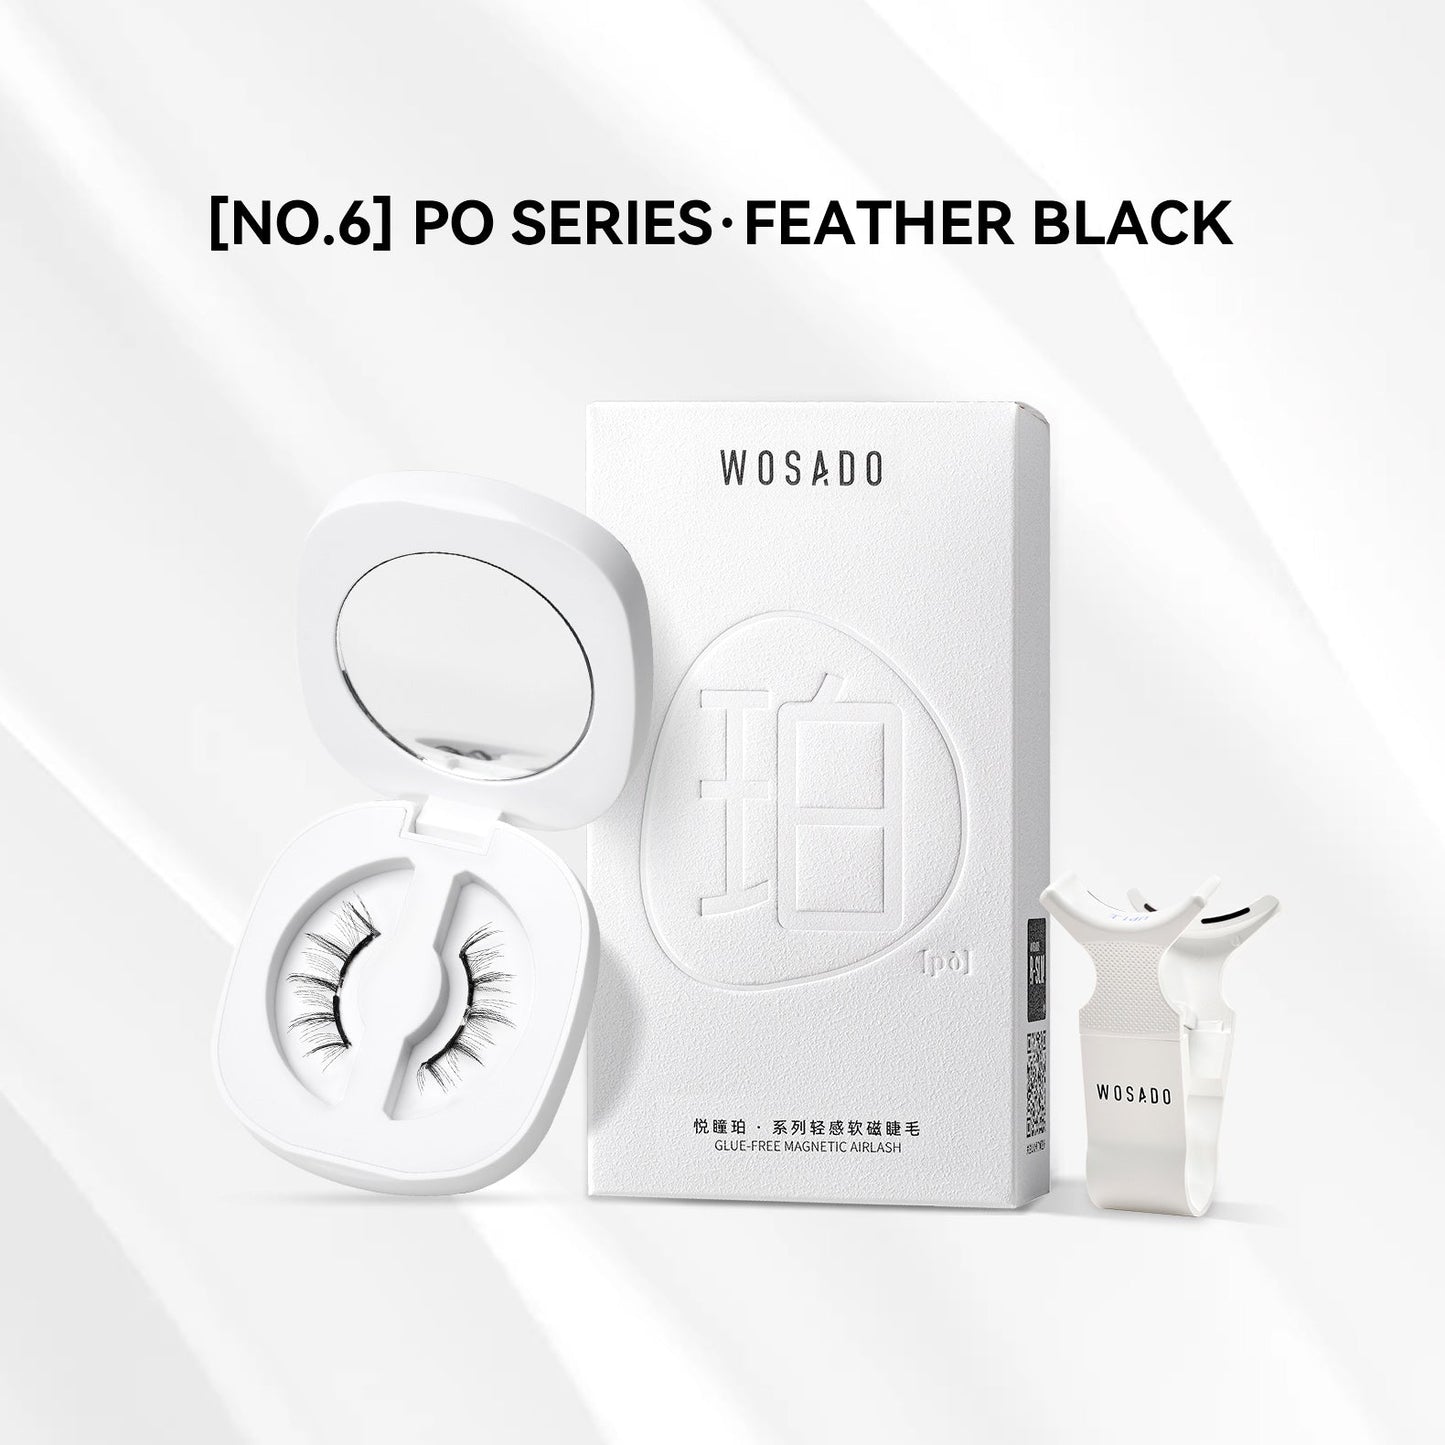 【WOSADO】 Feather Black NO.6